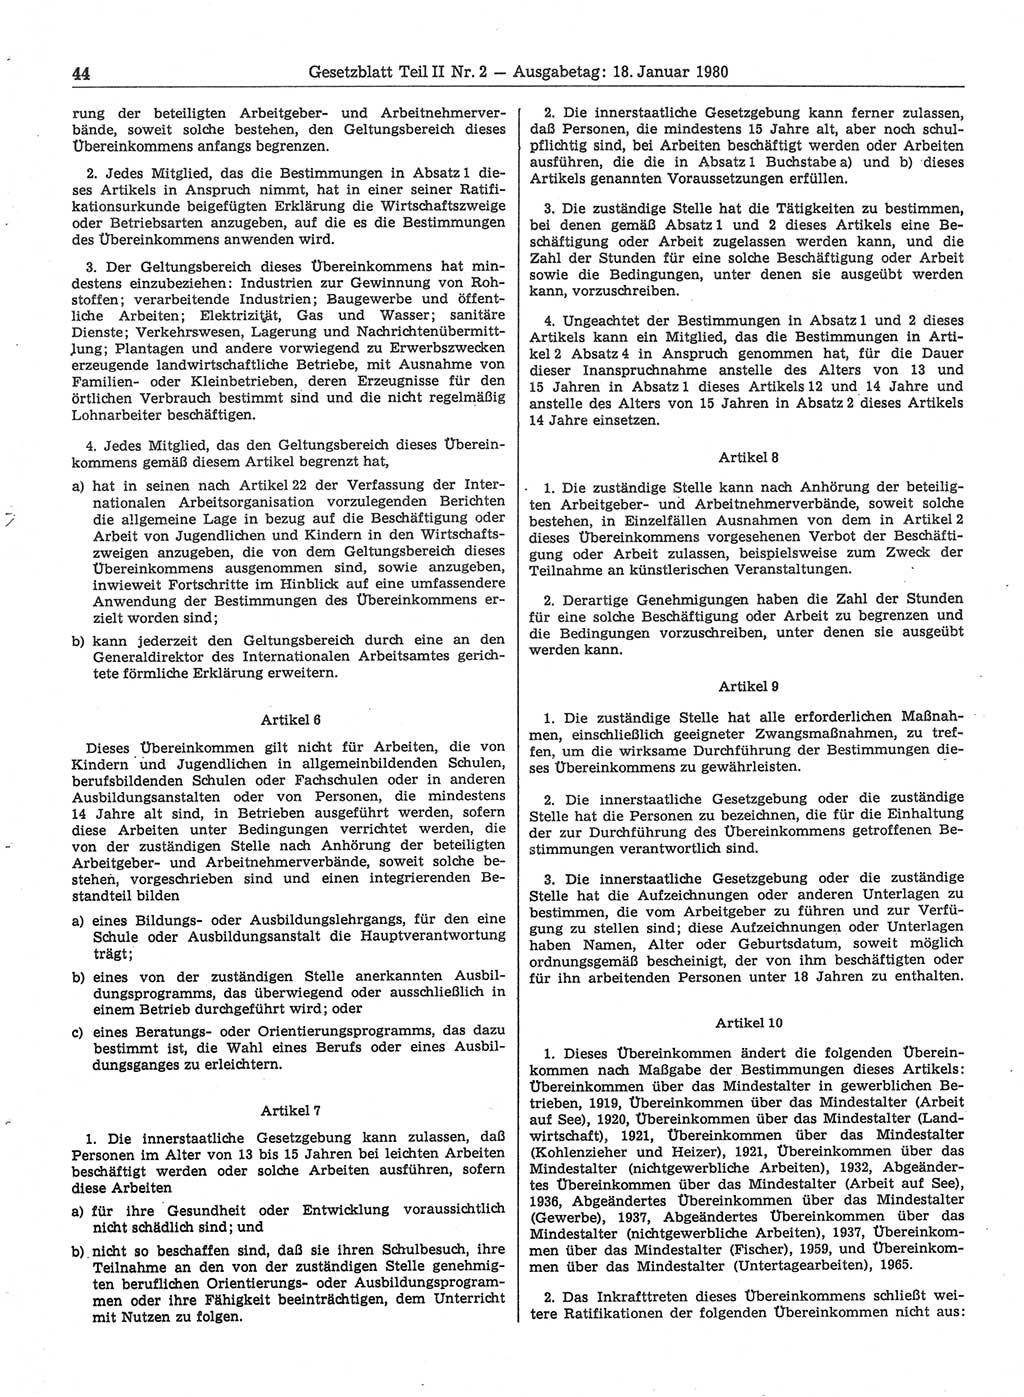 Gesetzblatt (GBl.) der Deutschen Demokratischen Republik (DDR) Teil ⅠⅠ 1980, Seite 44 (GBl. DDR ⅠⅠ 1980, S. 44)